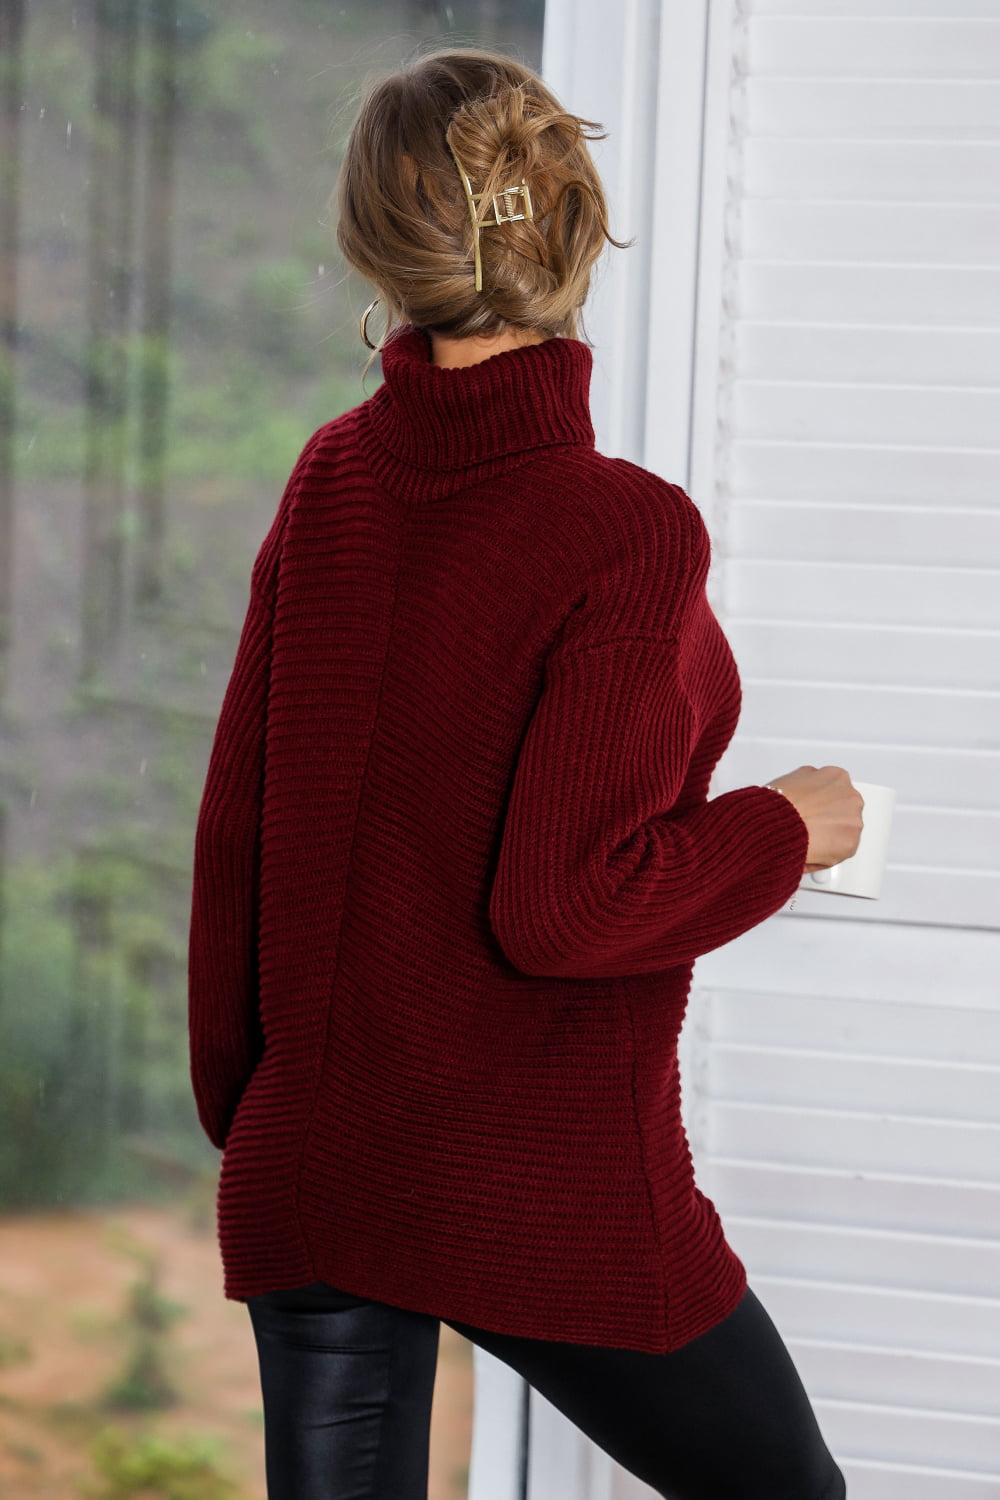 Women’s Horizontal Ribbing Turtleneck Tunic Sweater